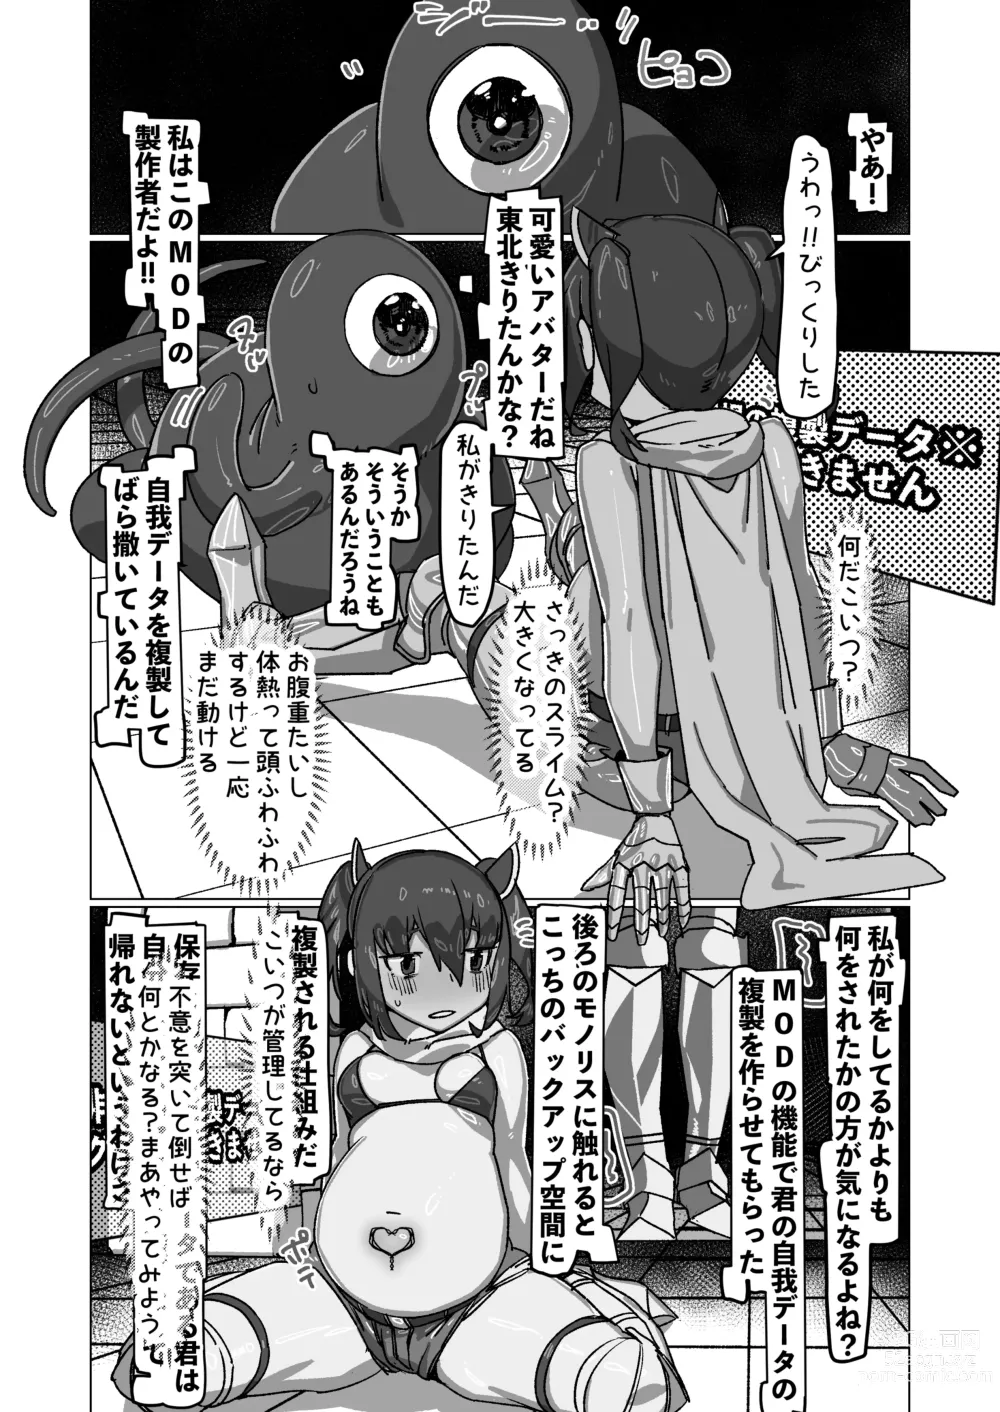 Page 10 of doujinshi Jibun no Koto o   Tohoku Kiritan da to Omoikondeiru Kiritan  no Full Dive VR Dungeon